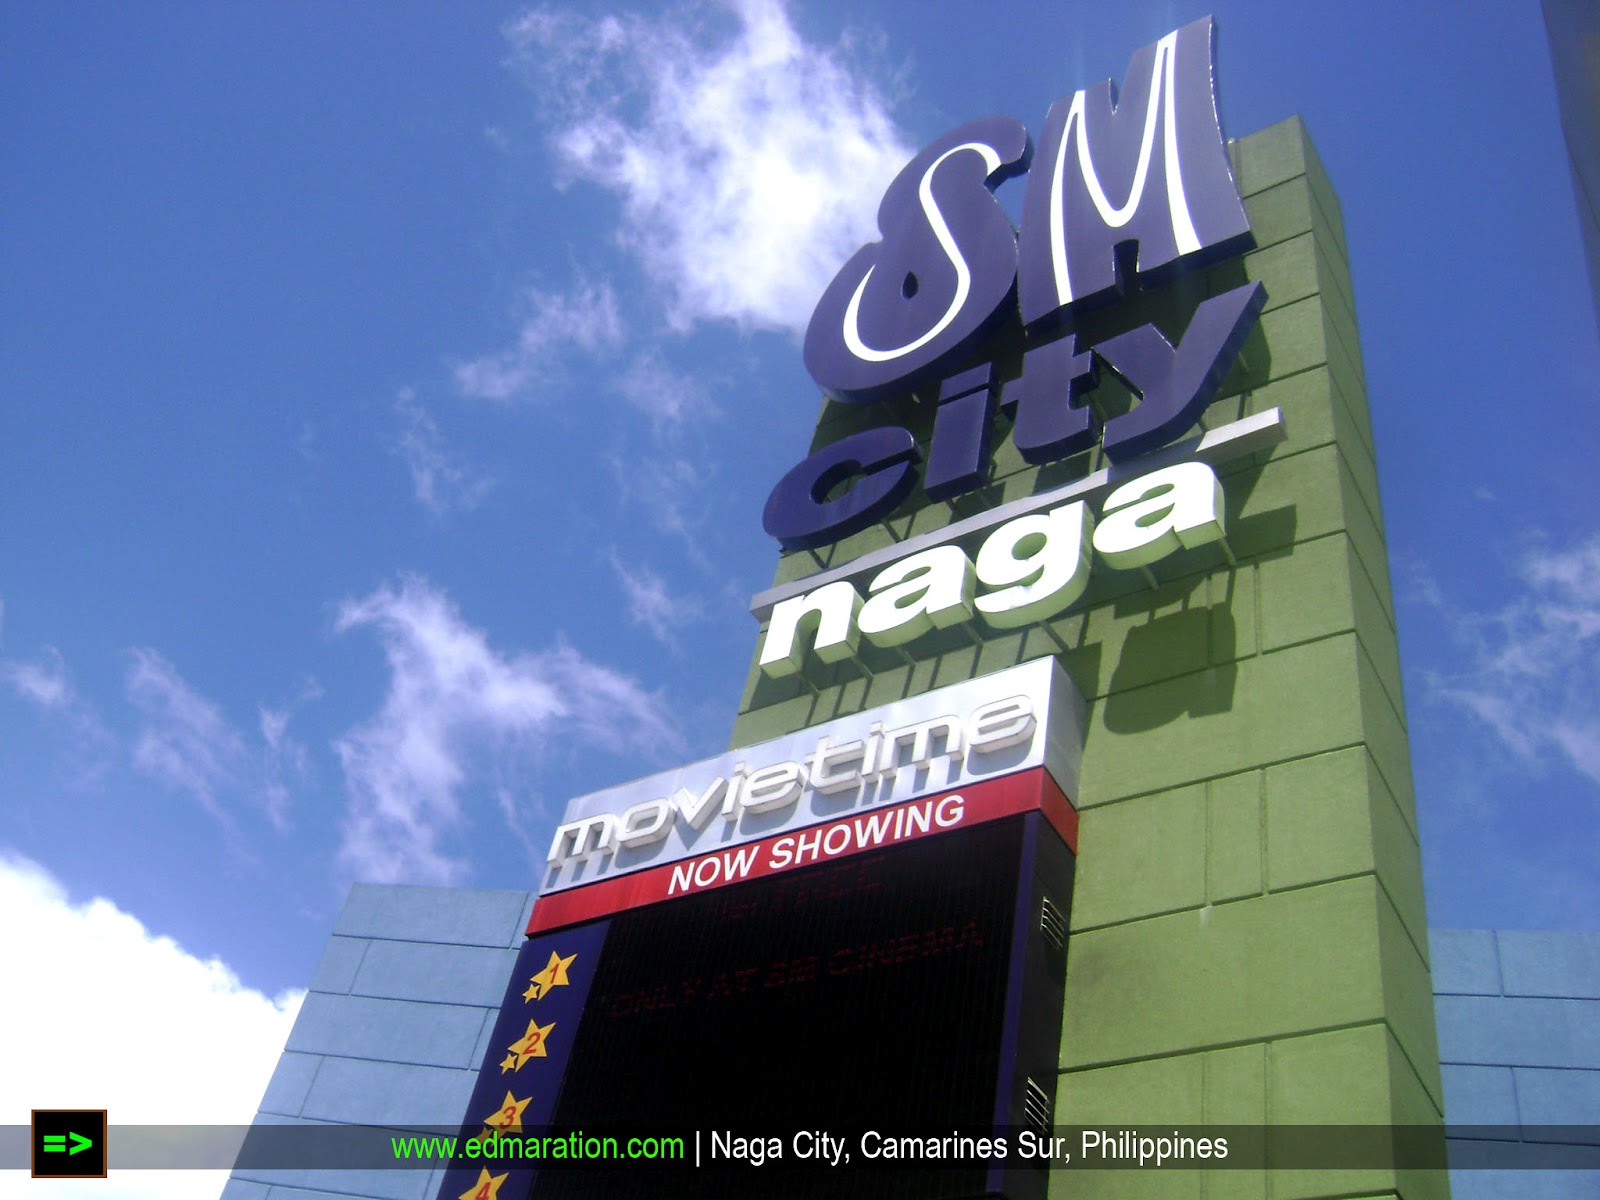 SM City Naga